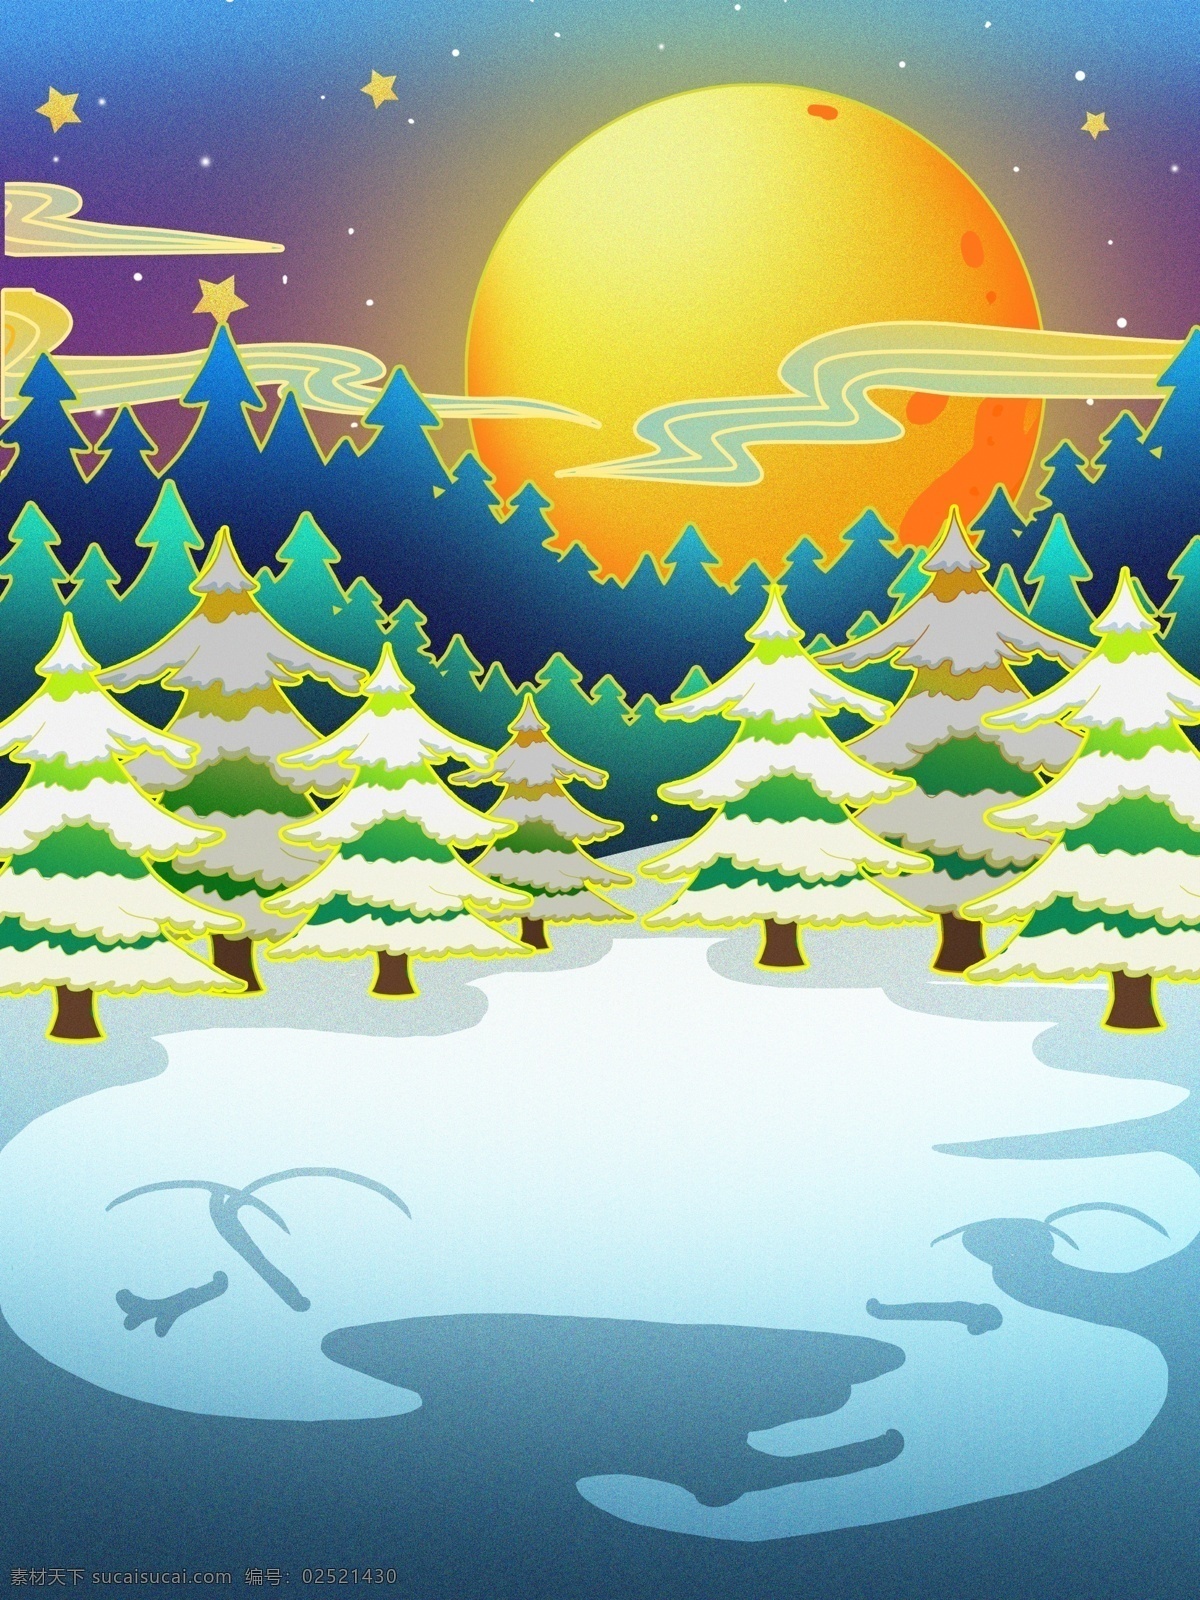 手绘 雪地 圣诞树 圆月 背景 平安夜 树林 广告背景 背景设计 彩绘背景 背景展板 特邀背景 背景图 创意 清新